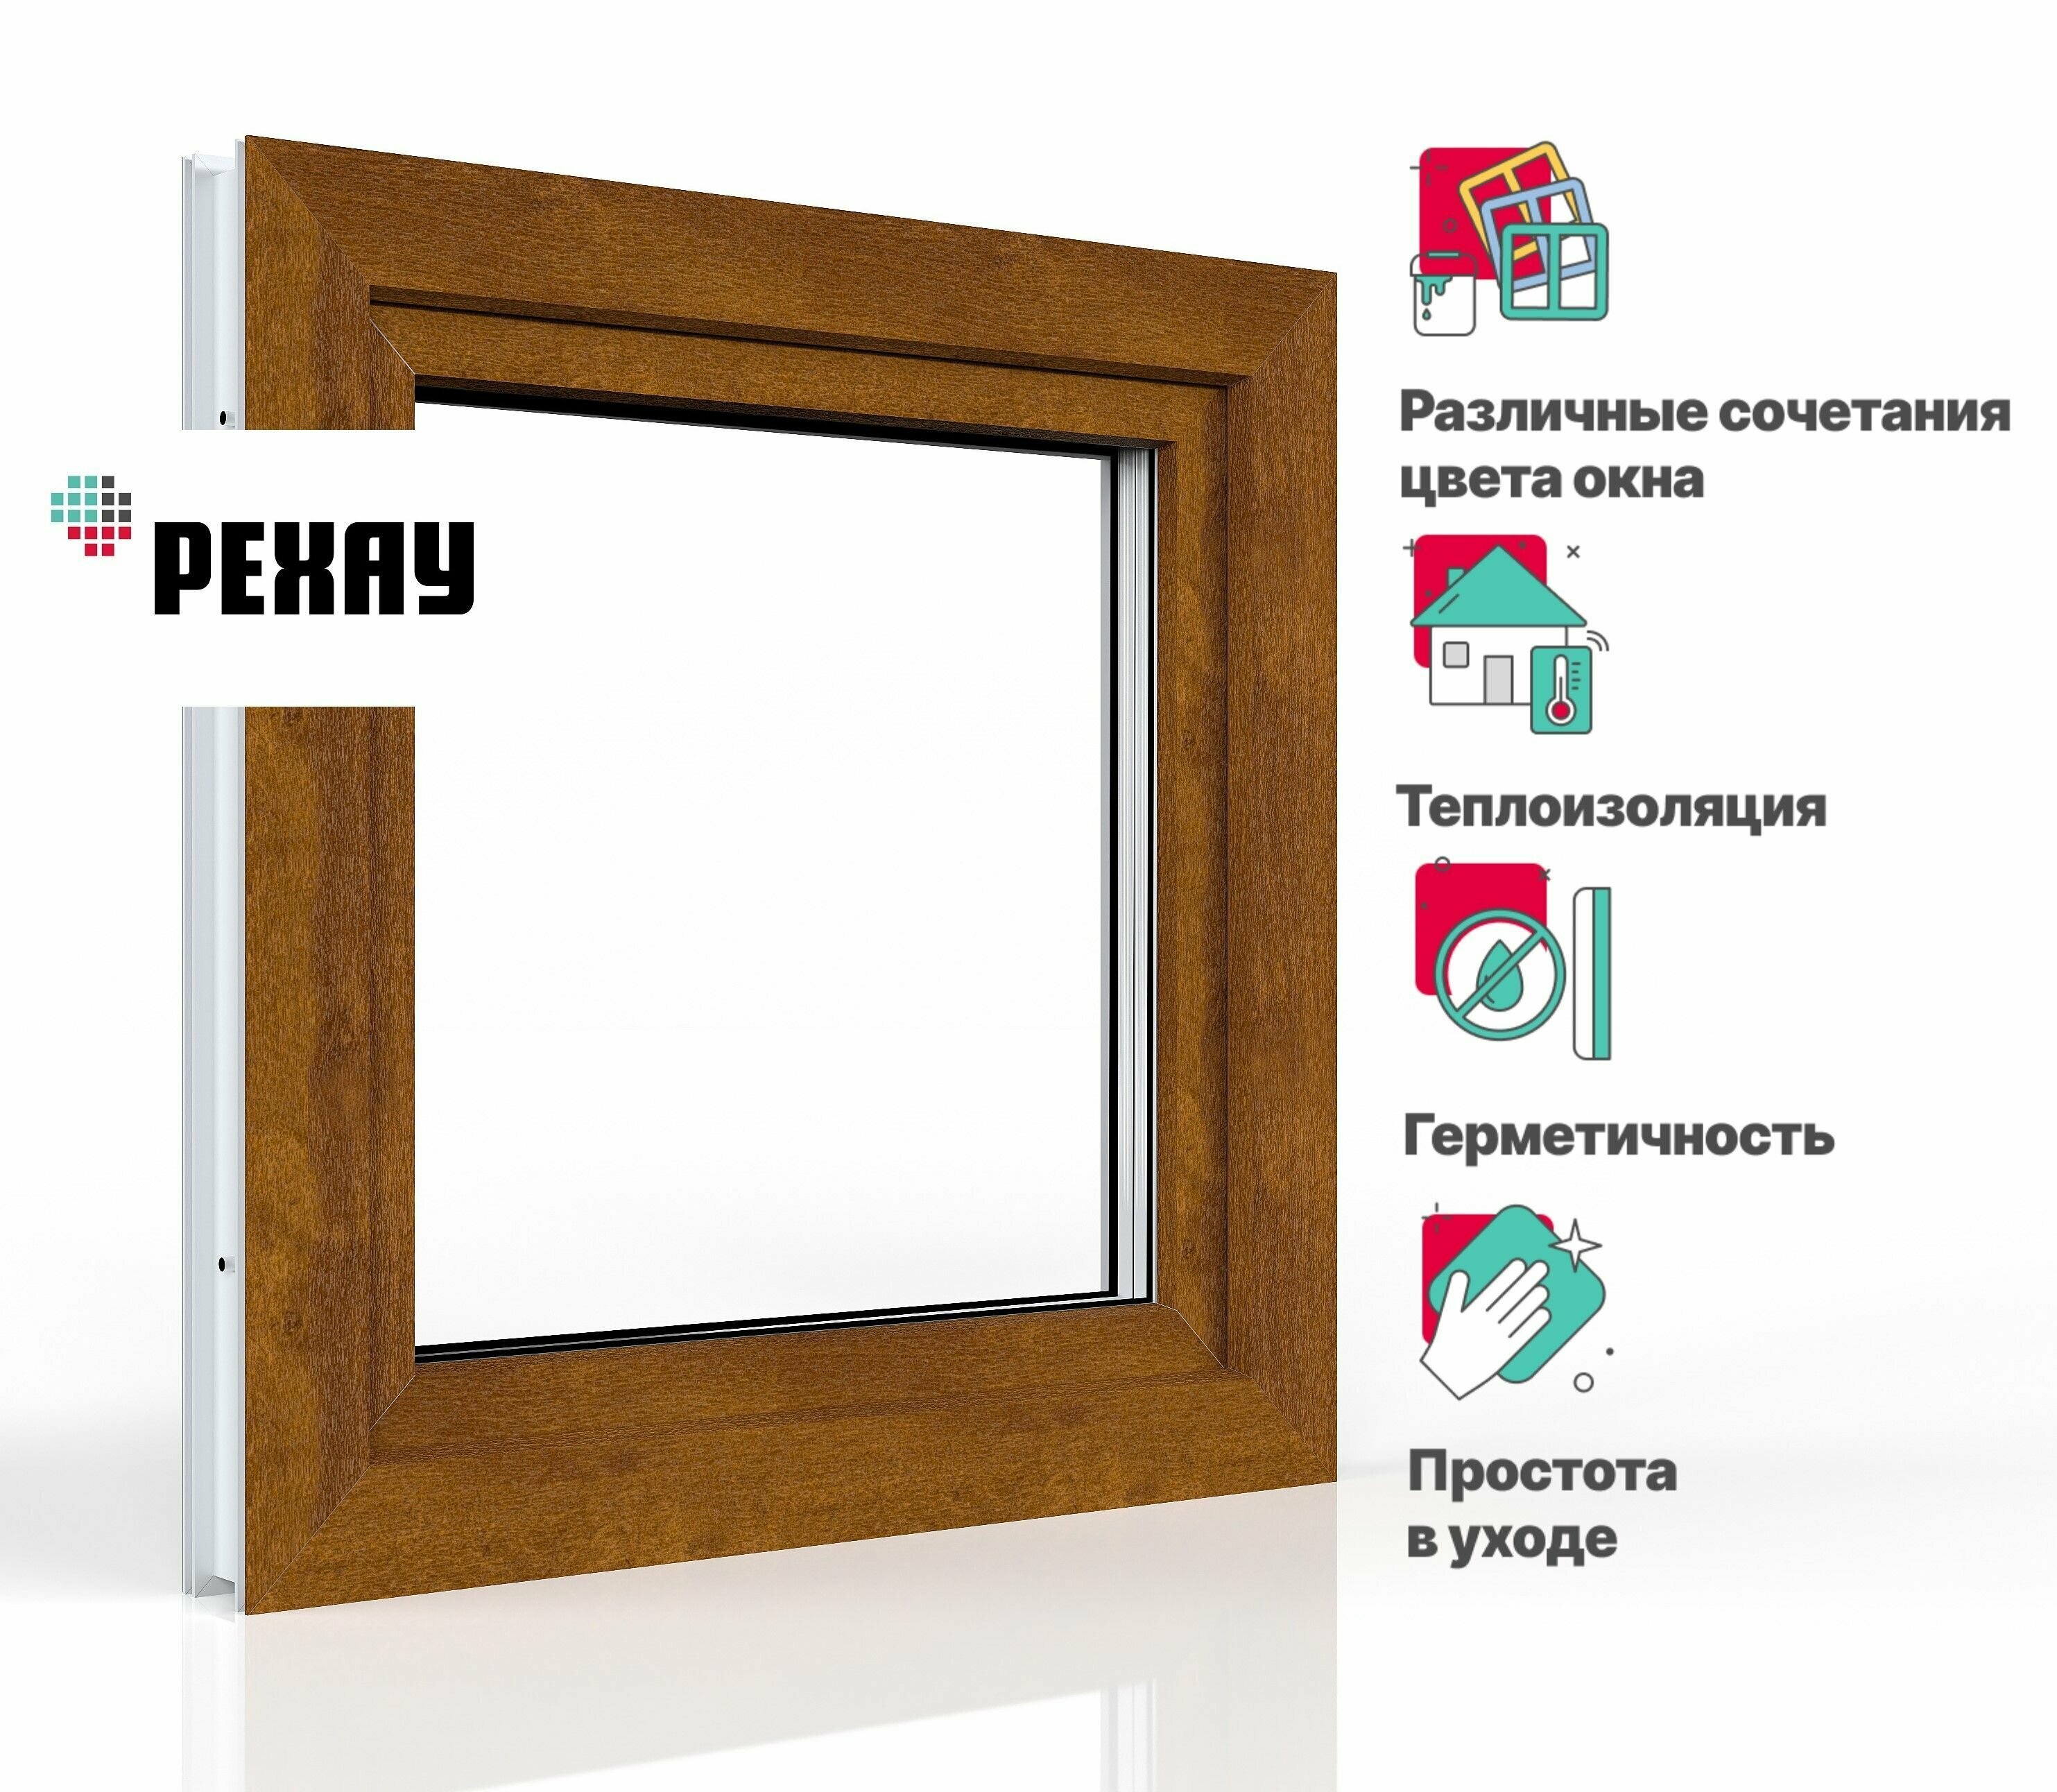 Пластиковое окно ПВХ REHAU BLITZ 600х600 мм (ВхШ) с учетом подставочного профиля одностворчатое поворотно-откидное левое двухкамерный стеклопакет антрацитово-серый снаружи